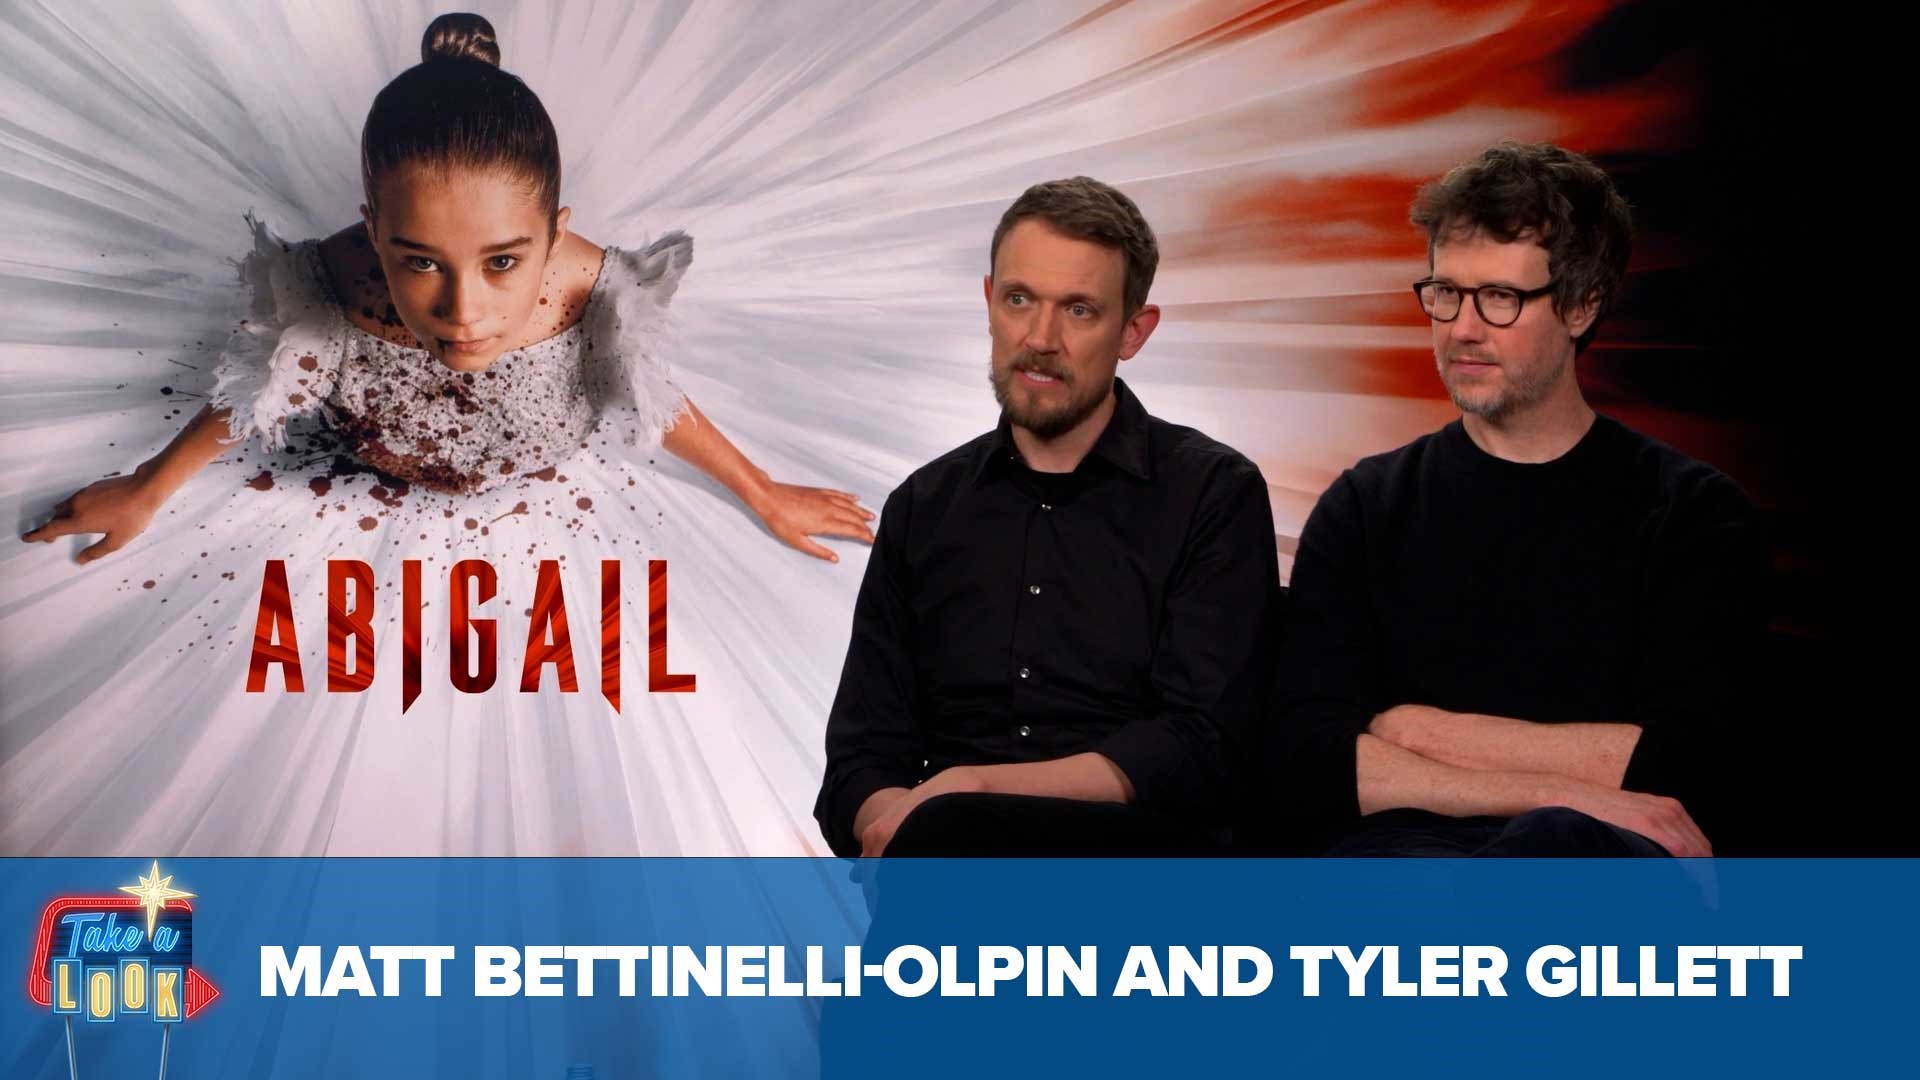 Meet the minds behind "Abigail": Matt Bettinelli-Olpin and Tyler Gillett